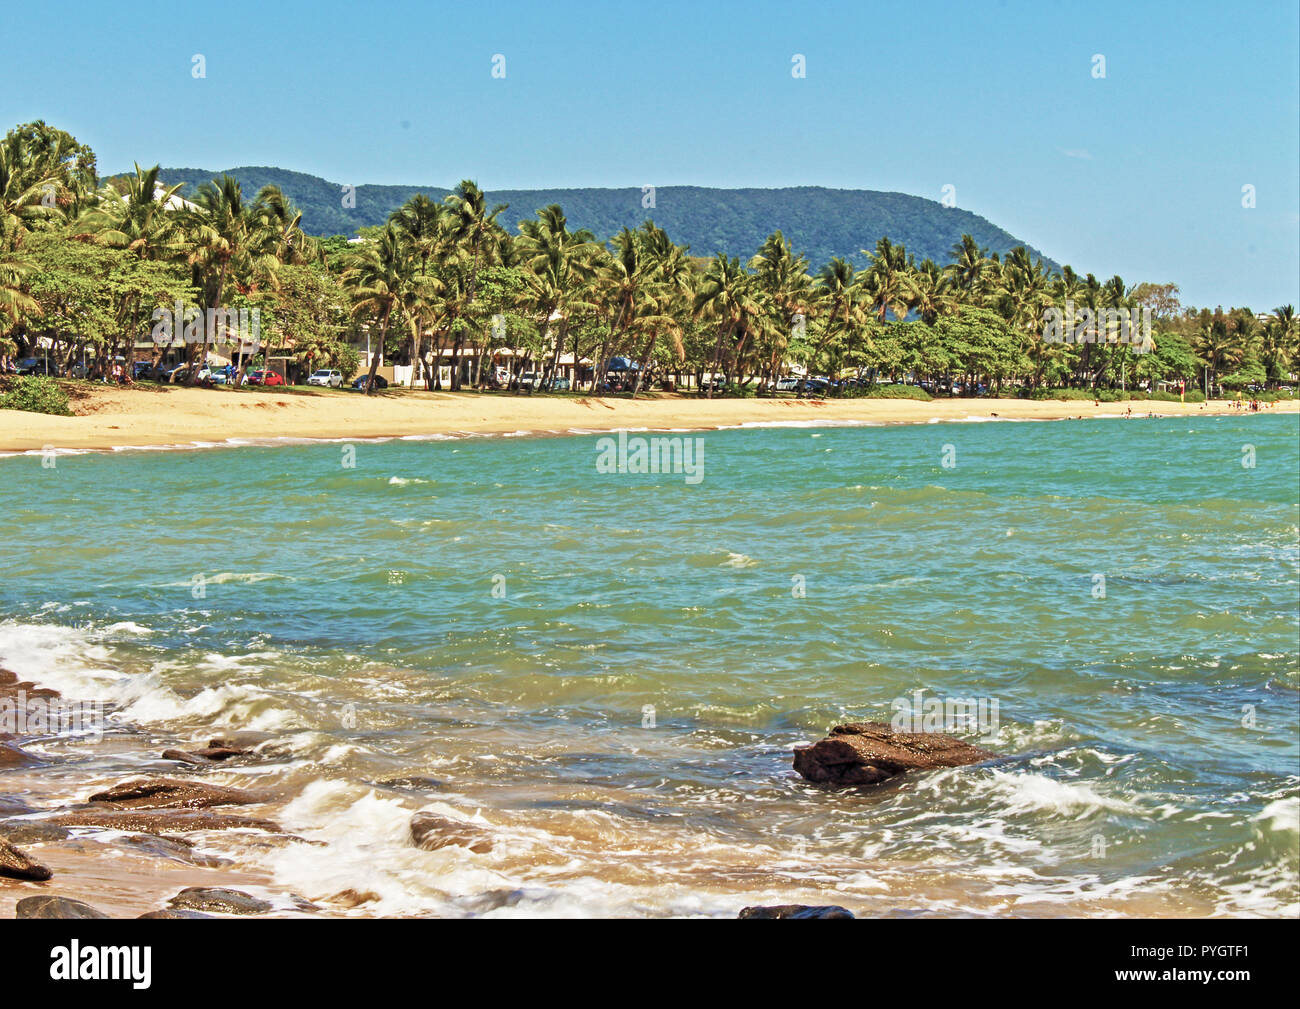 Die schönen Palmen gesäumten Strand und Promenade, wie über von der Bucht am Trinity Beach, einem nördlichen Vorort Beach Cairns QLD Australien gesehen Stockfoto